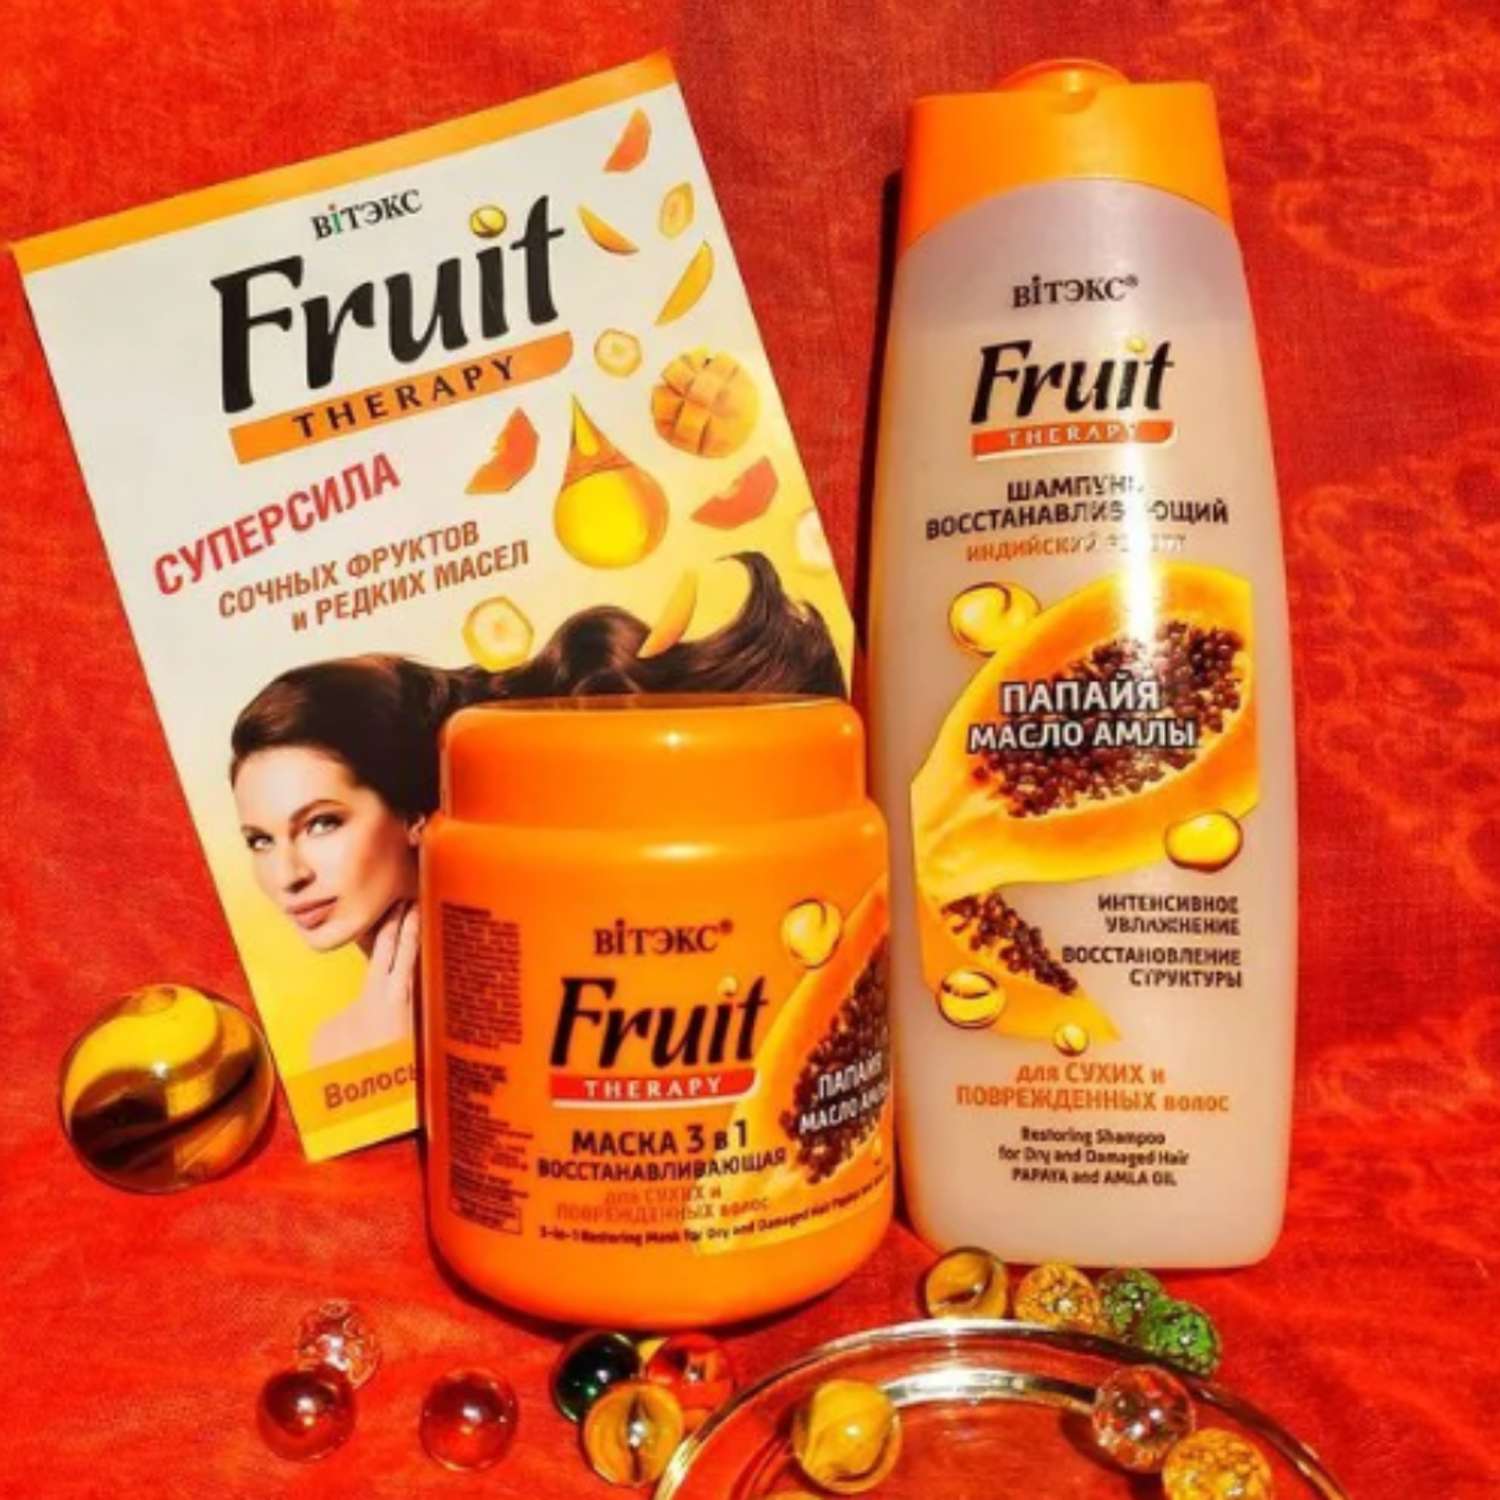 Маска для волос ВИТЭКС Fruit Therapy восстанавливающая 3в1 папайя и масло амлы 450 мл - фото 3